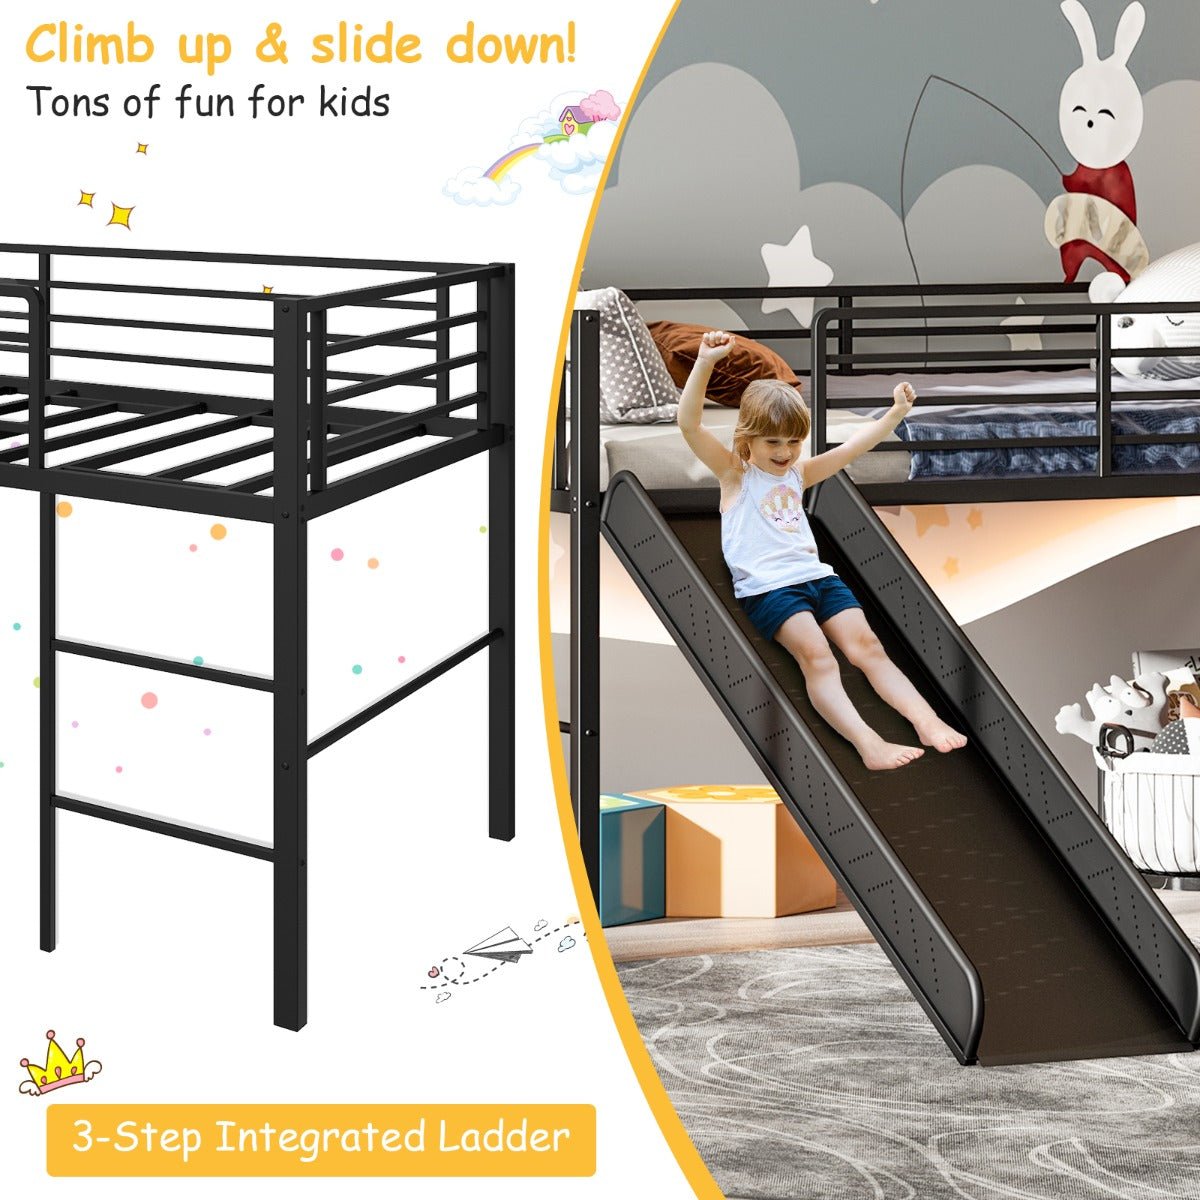 Kids' Imagination Soars with the Loft Bed Slide